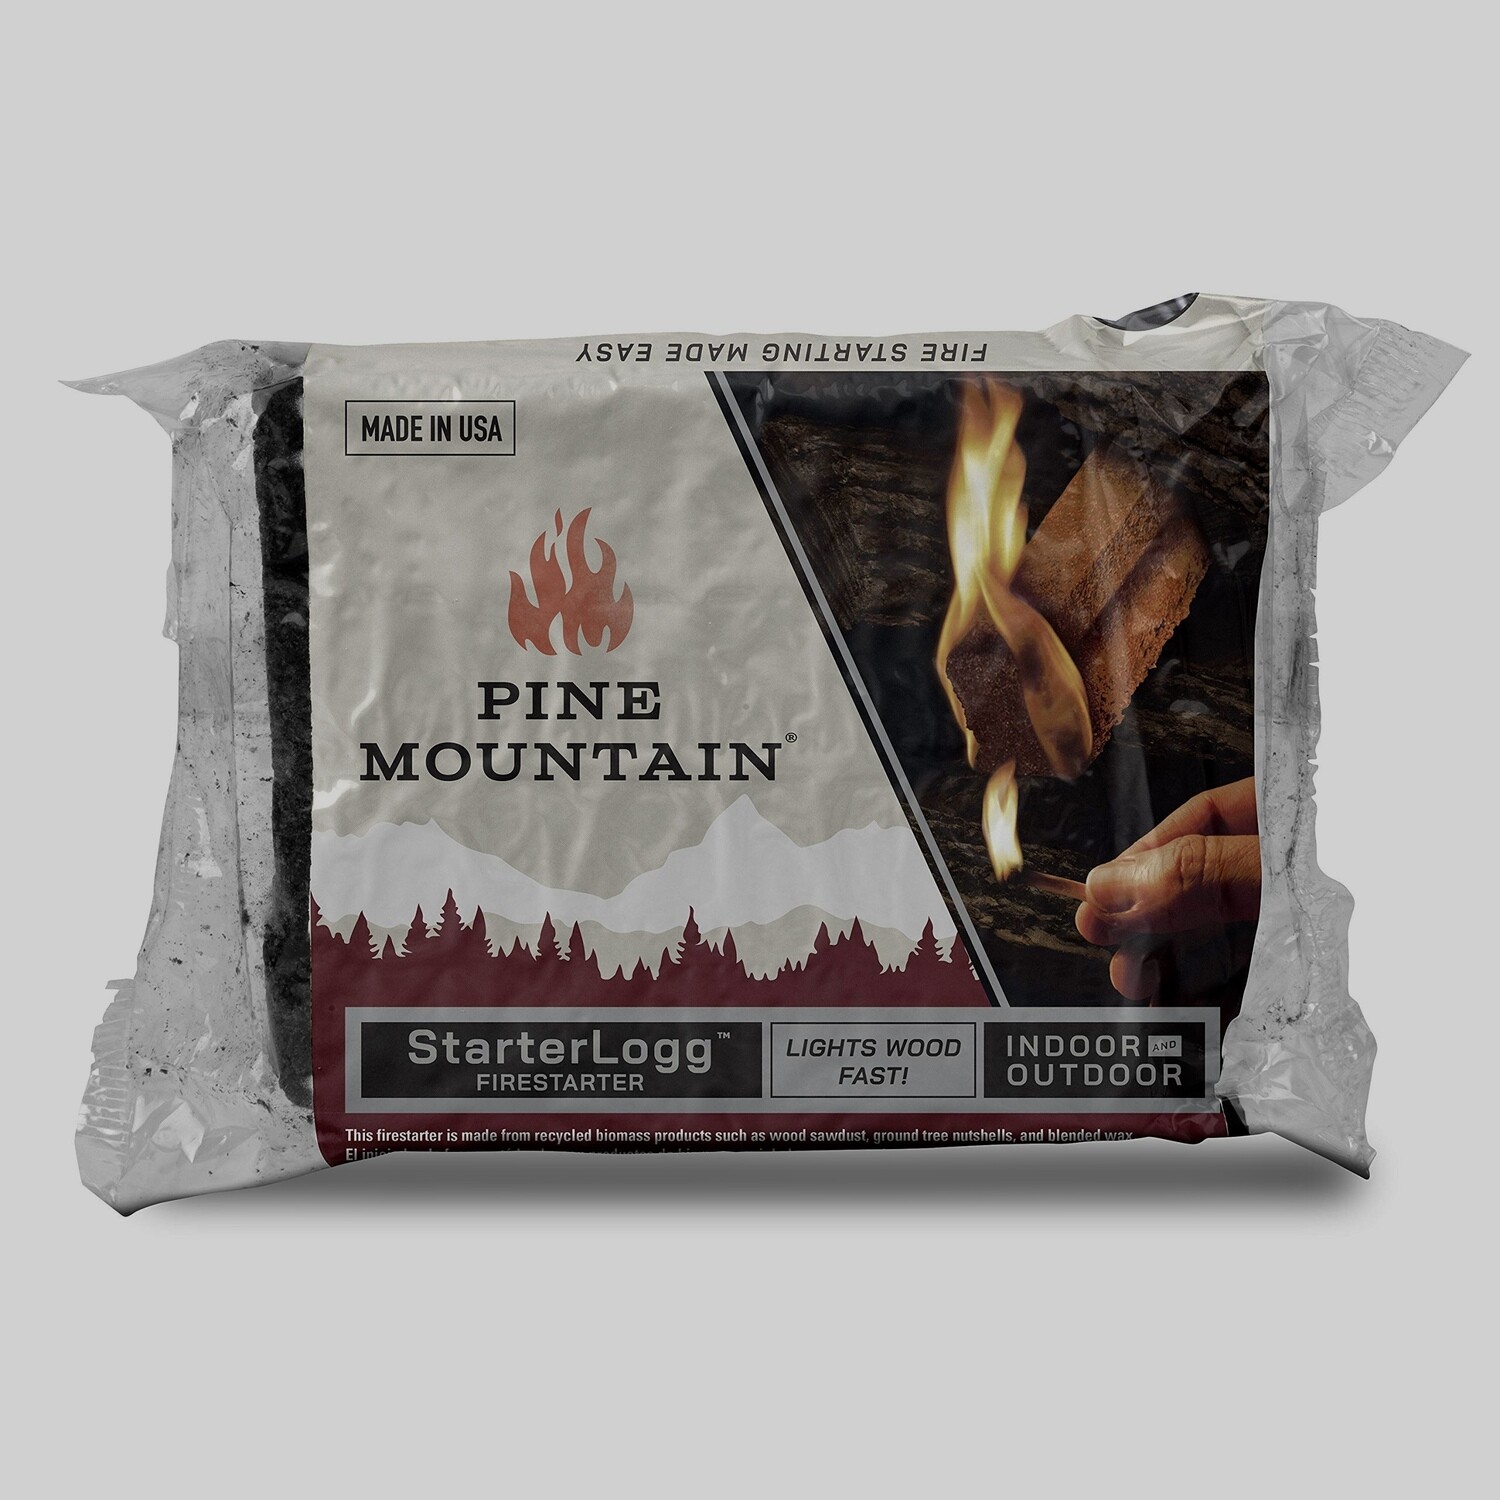 Pine Mountain Starterlogg Firestarter 4-Pack